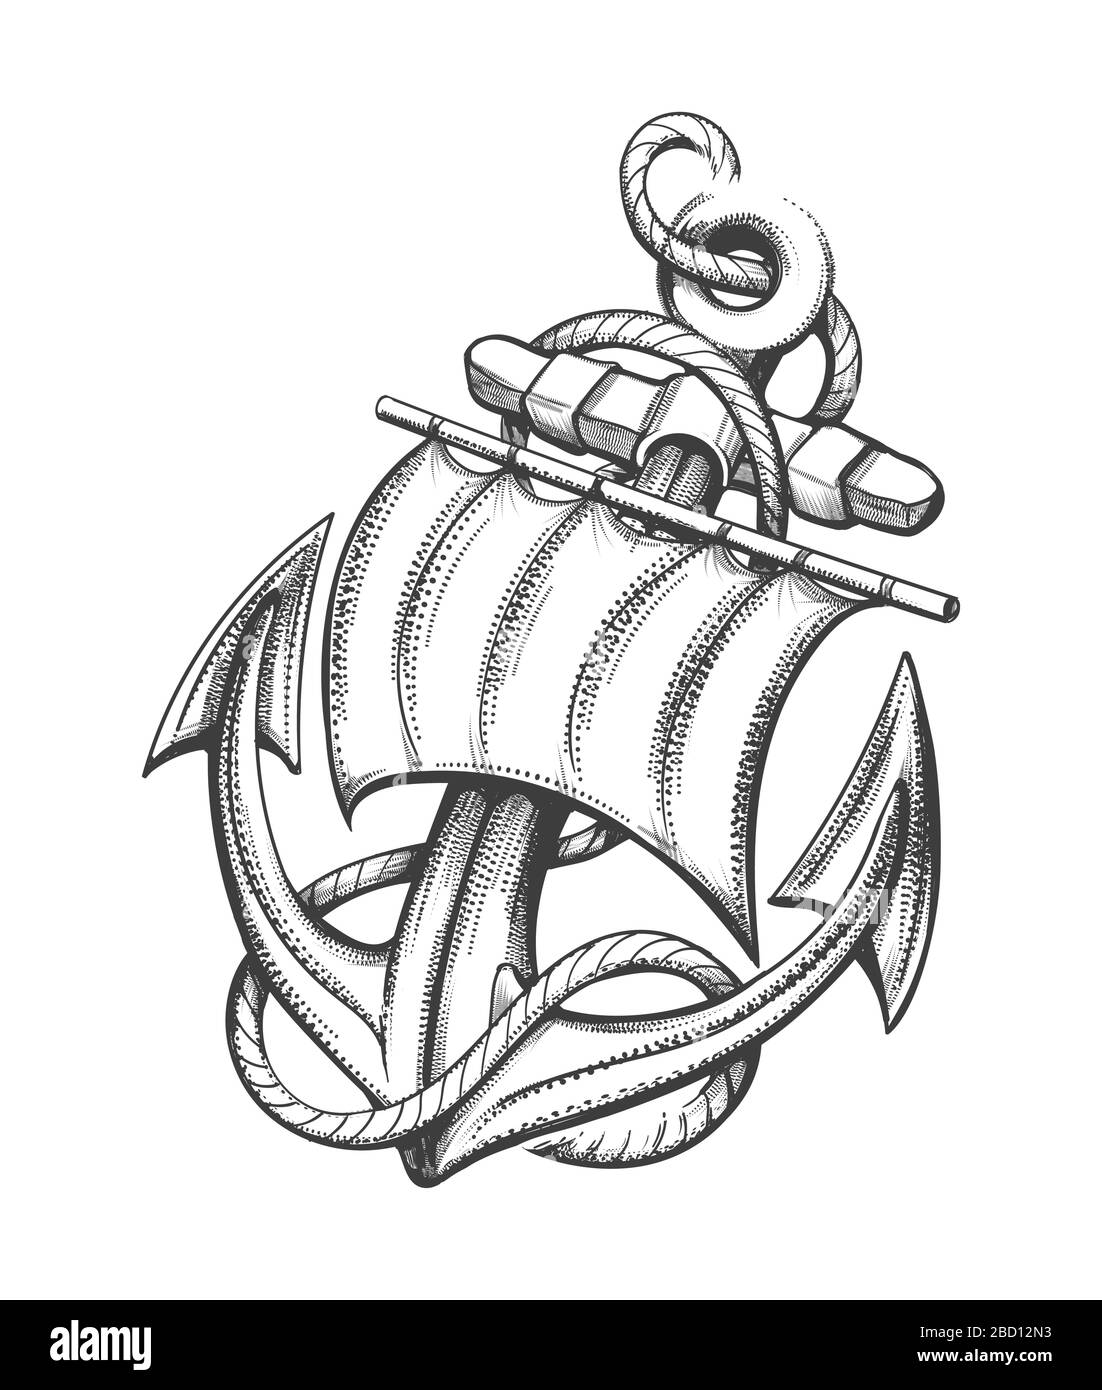 Bateau Anchor avec voile et cordes Tattoo dessiné en style Gravure. Illustration vectorielle. Illustration de Vecteur